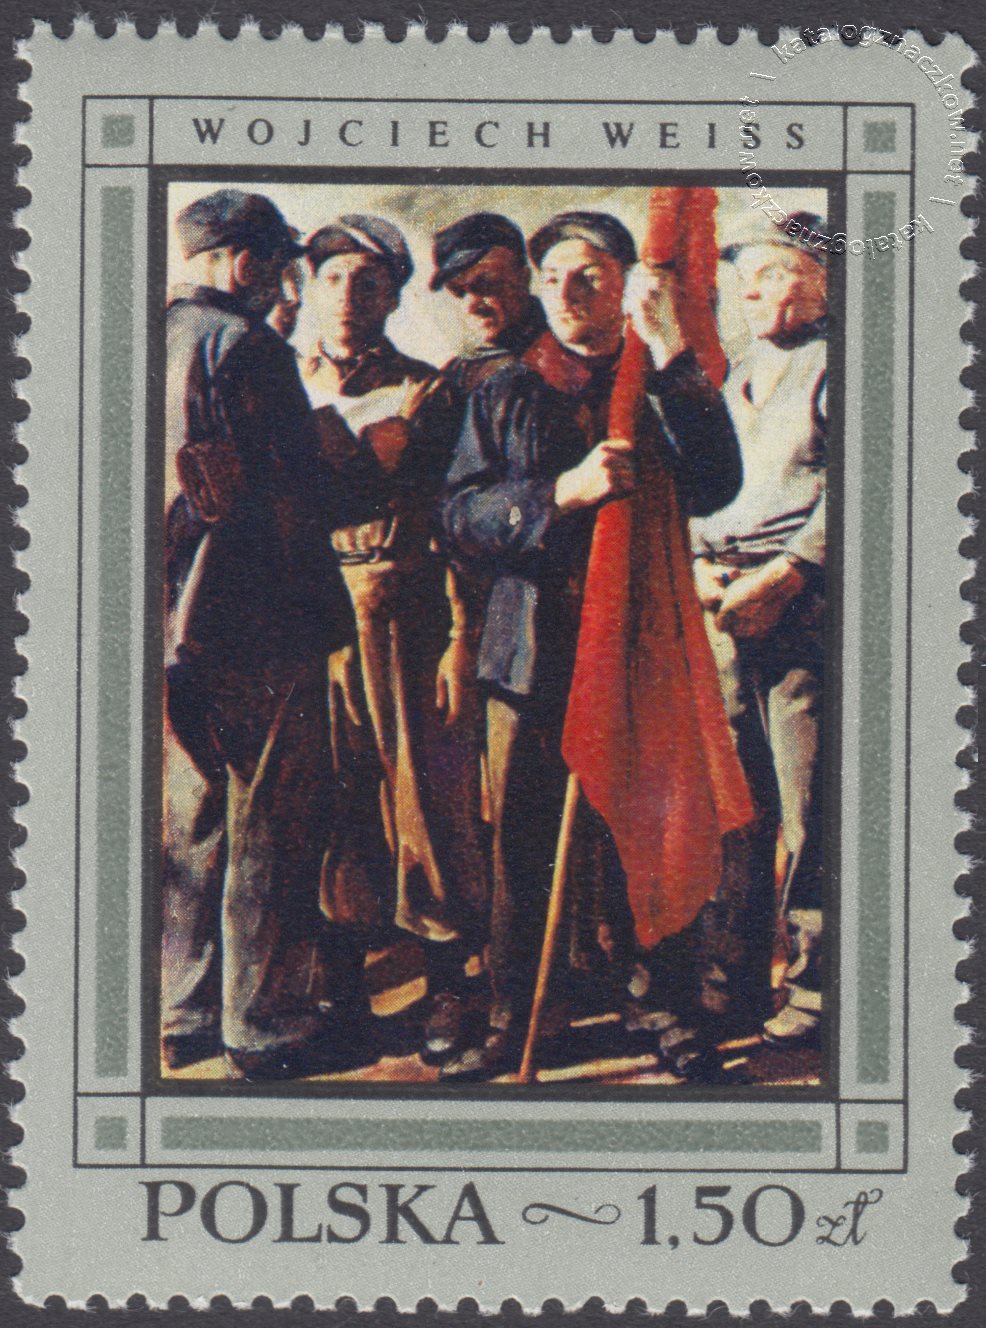 Malarstwo polskie znaczek nr 1721